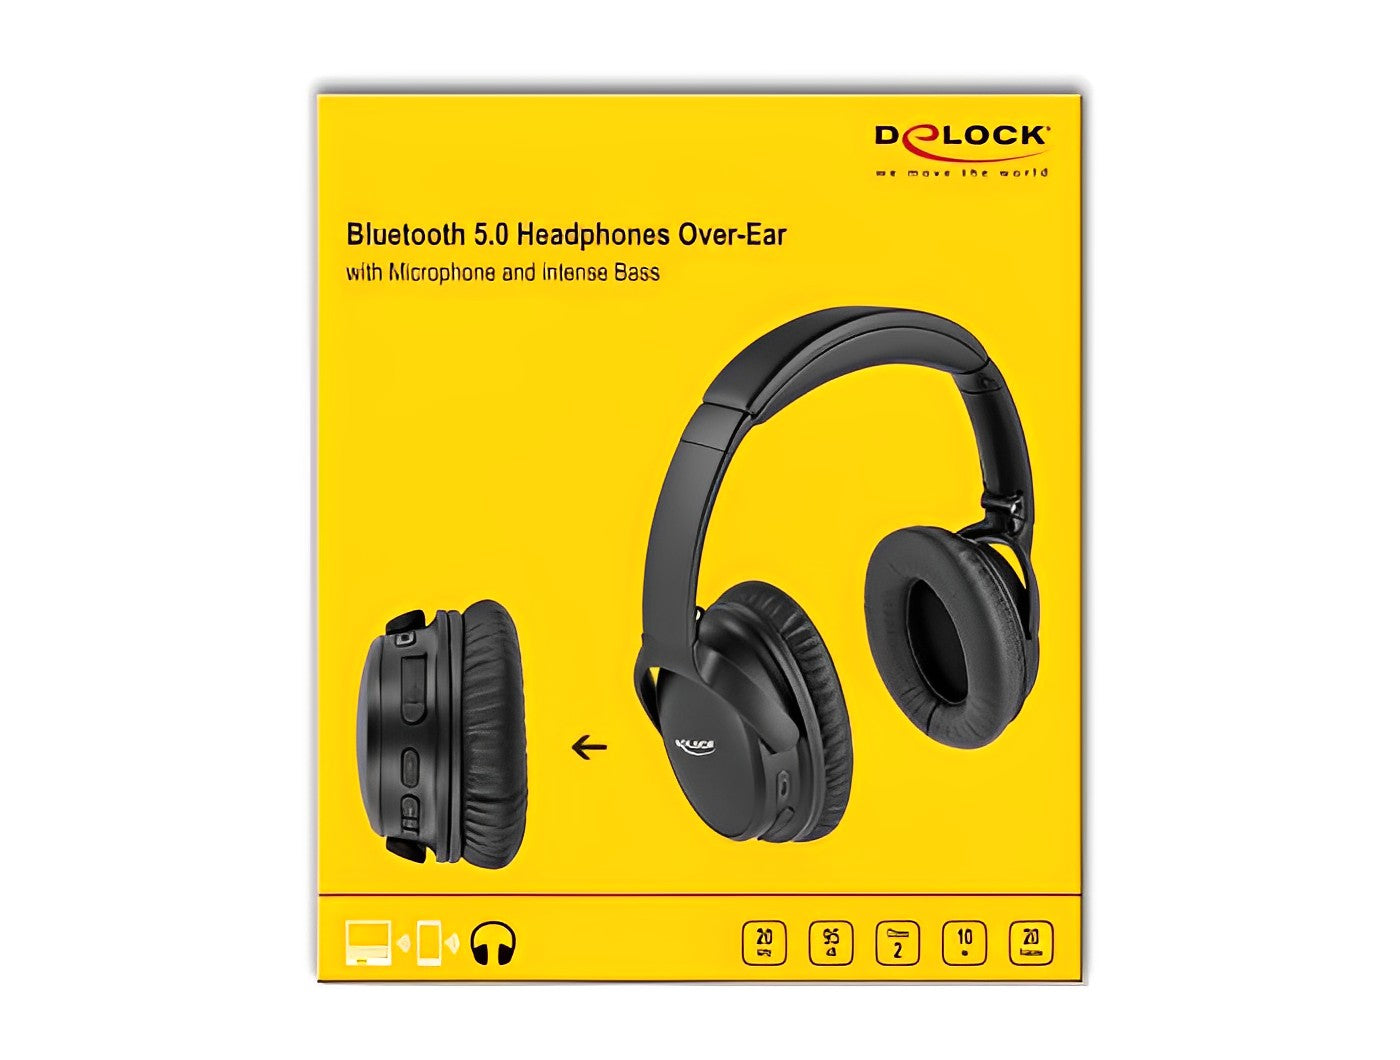 אוזניות Bluetooth 5.0 מתקפלות עם מיקרופון ובס אינטנסיבי - delock.israel